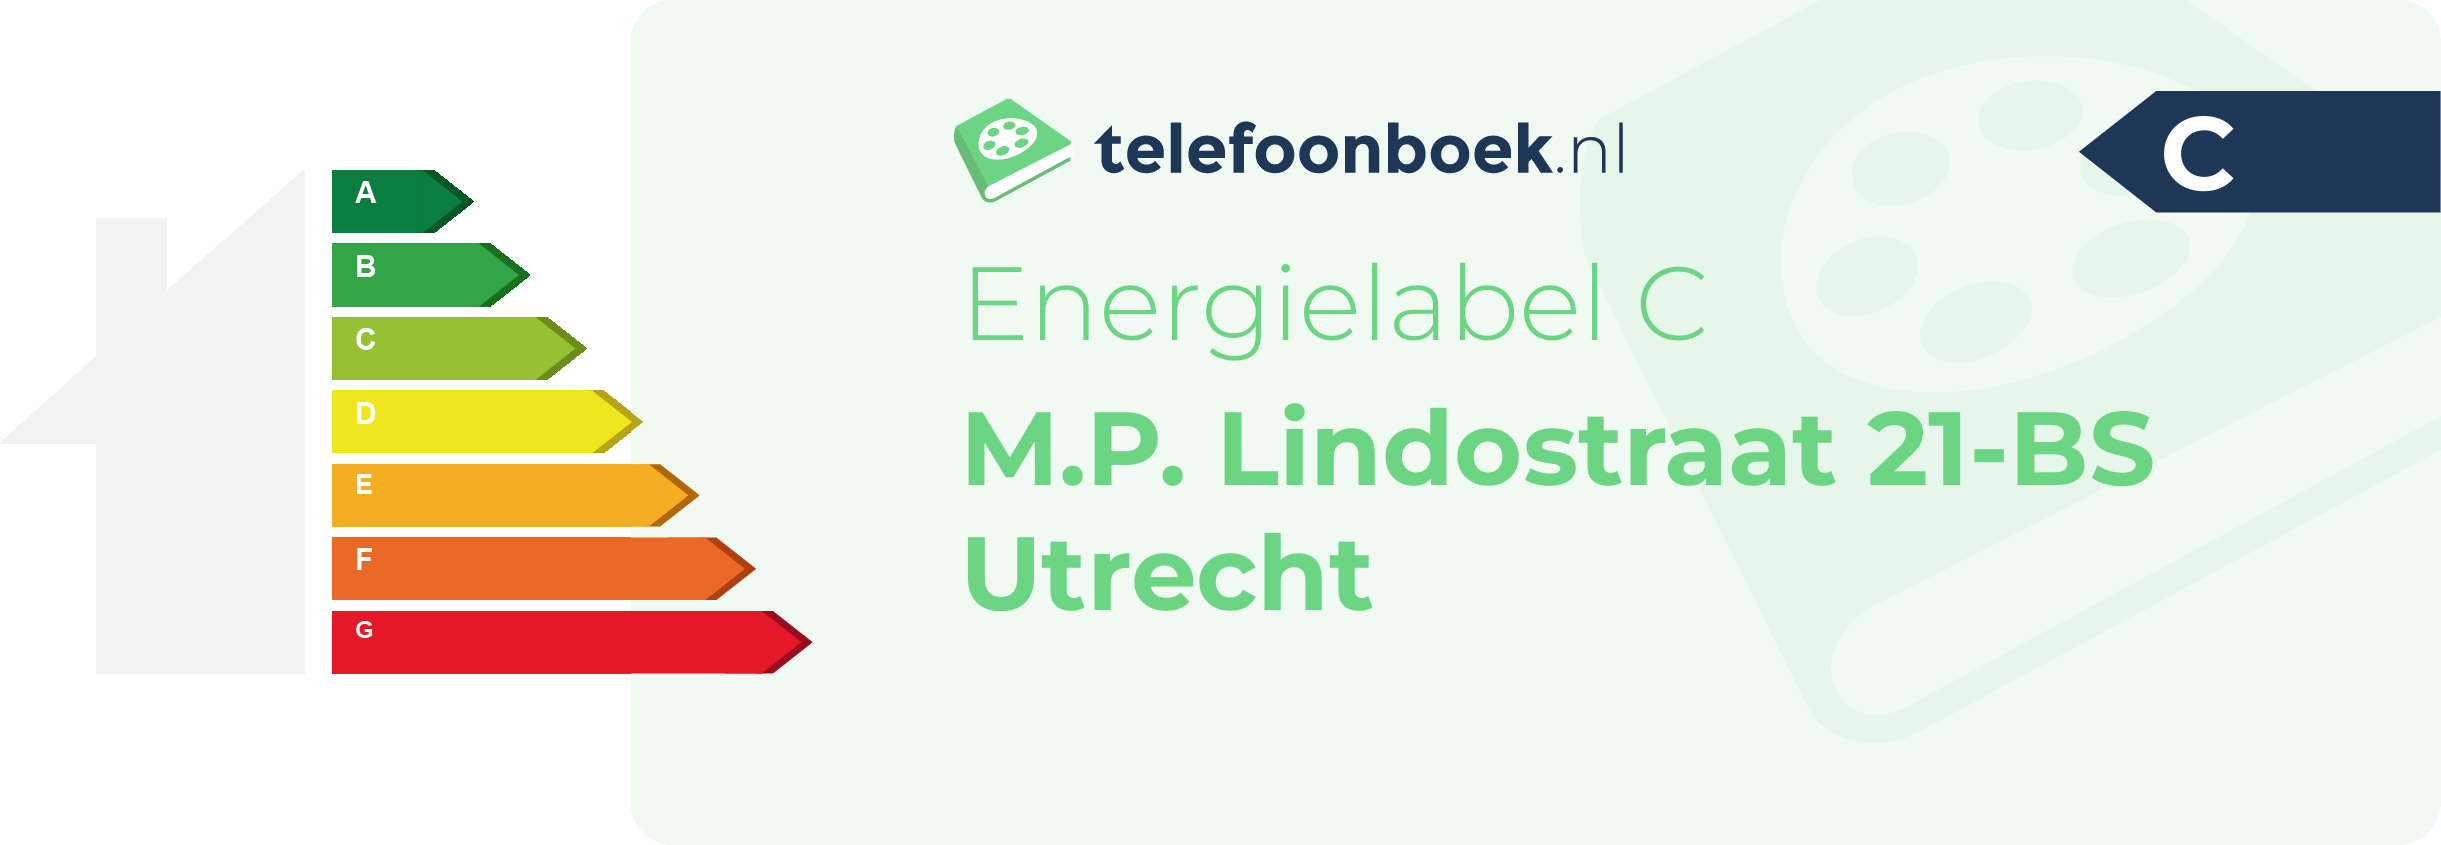 Energielabel M.P. Lindostraat 21-BS Utrecht